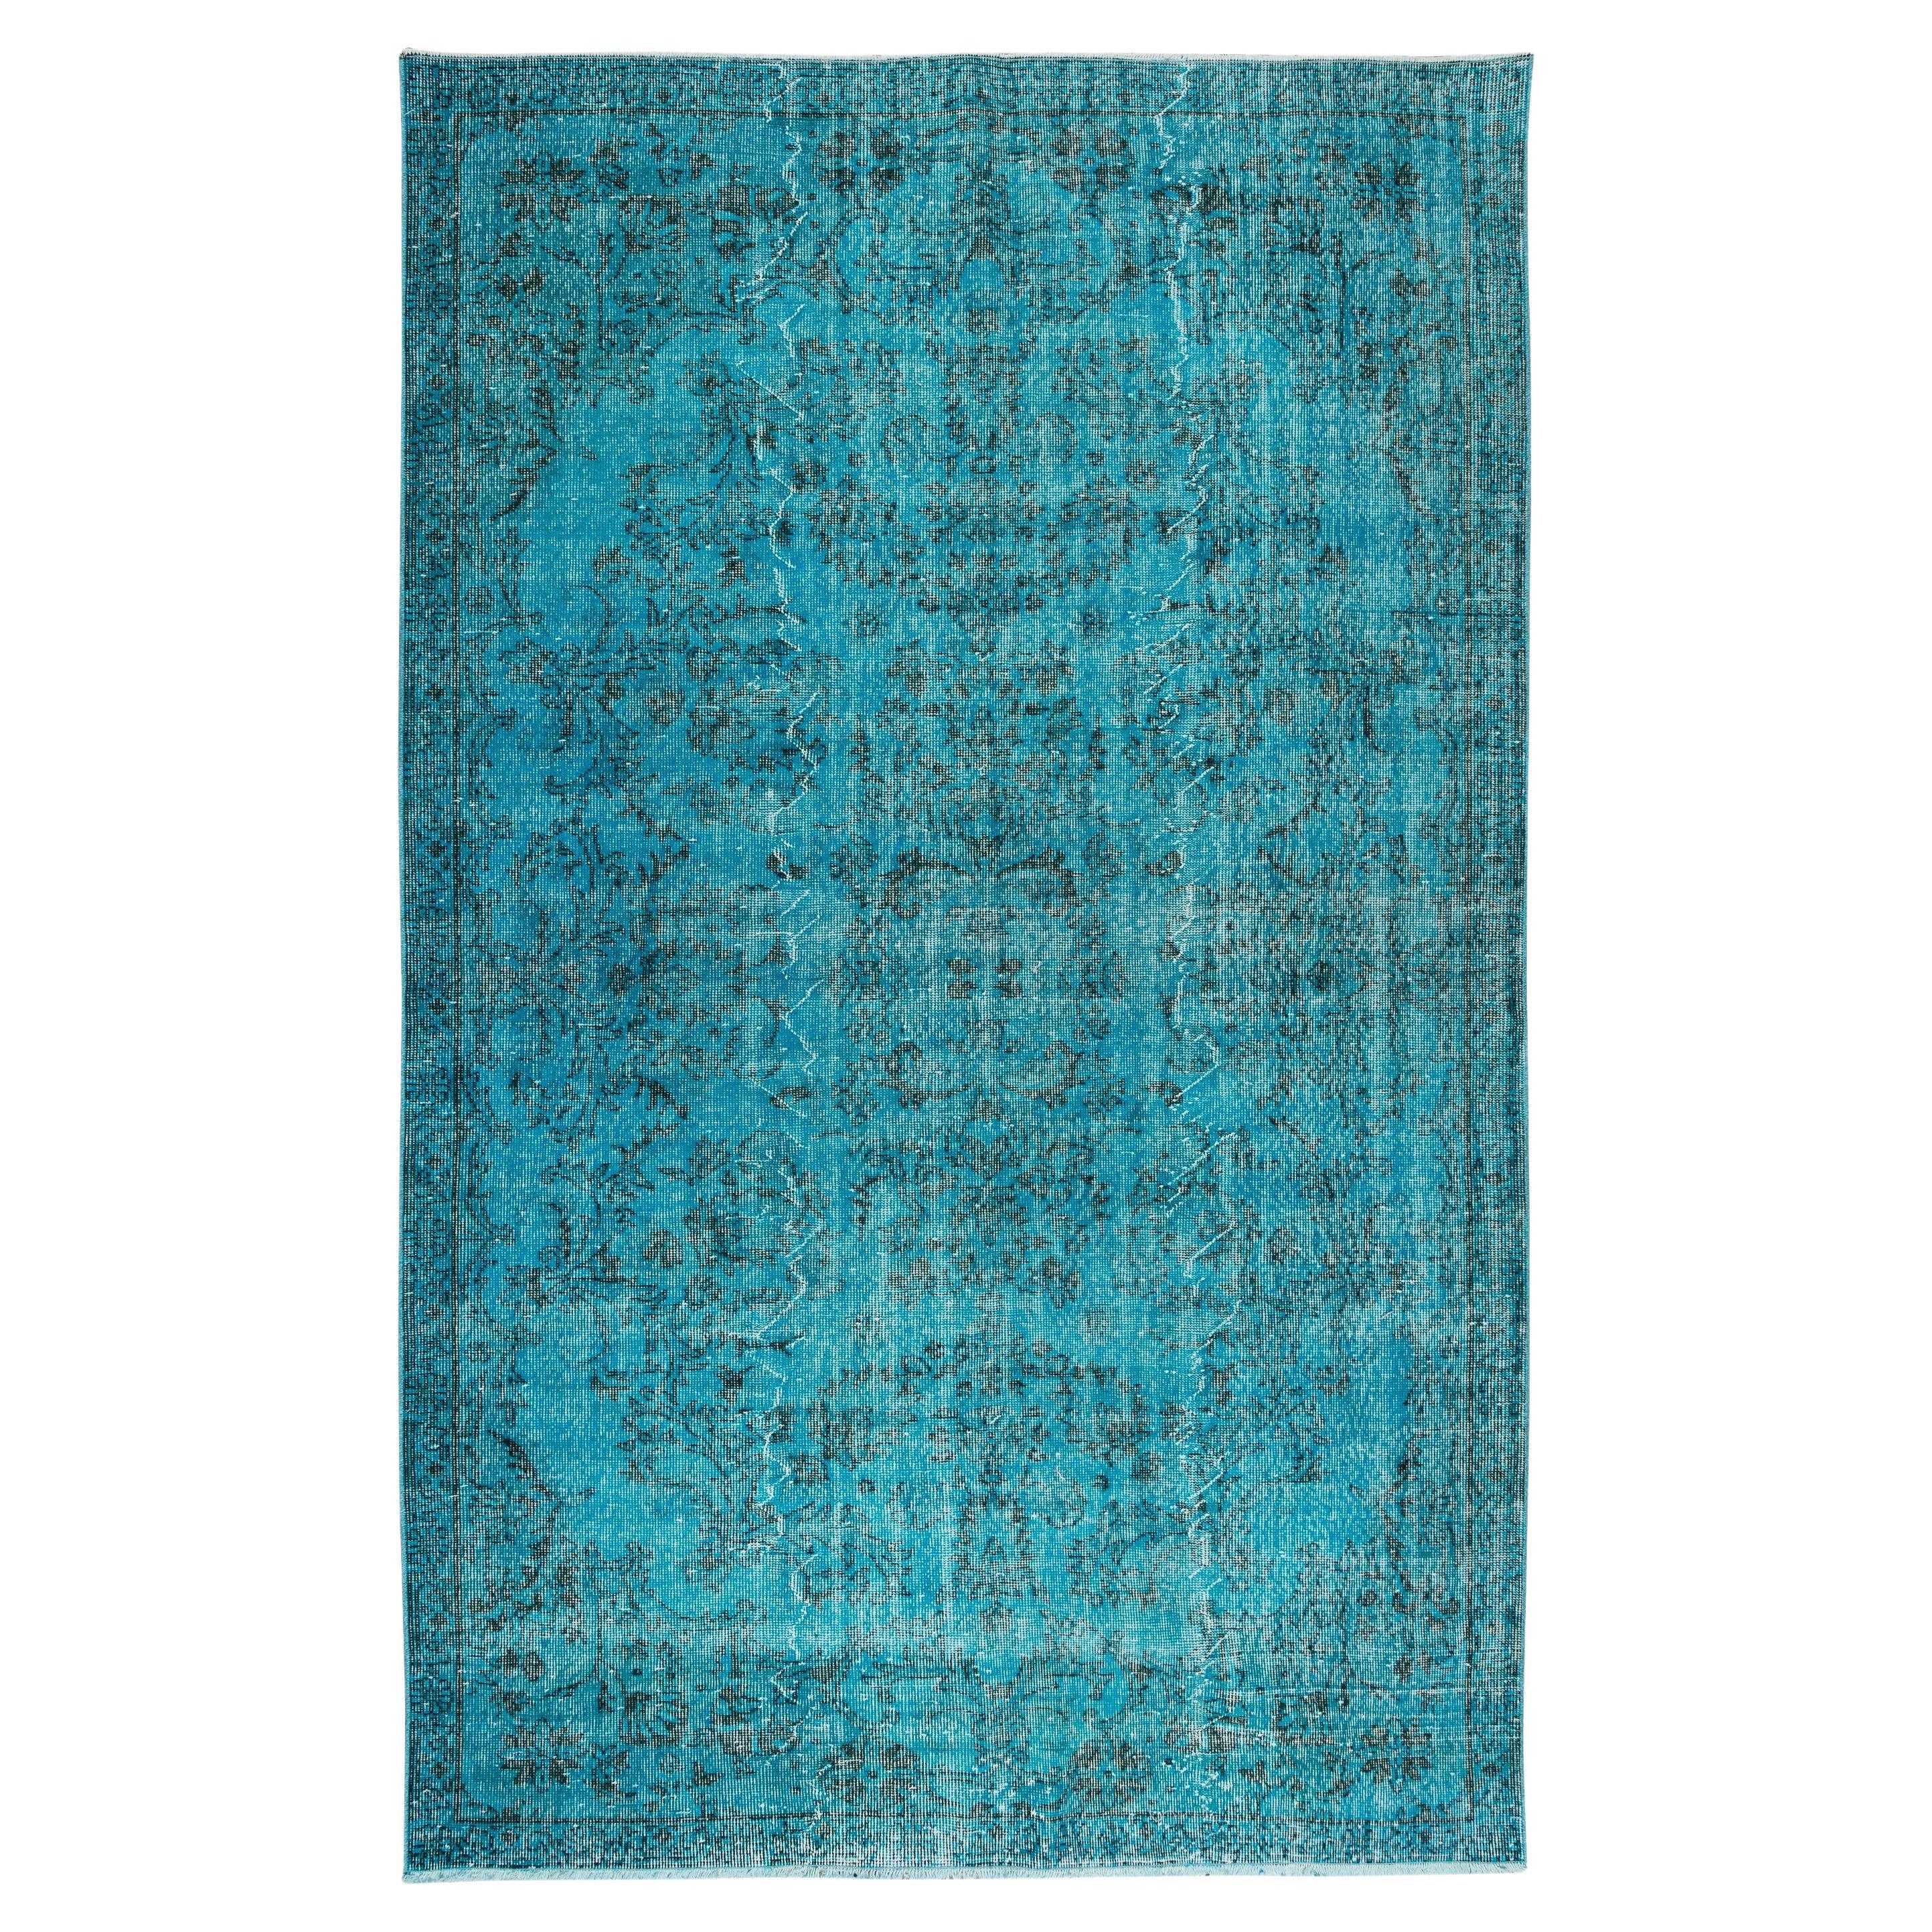 Handgefertigter türkischer Vintage-Teppich in Teal, neu gefärbt für moderne Inneneinrichtung